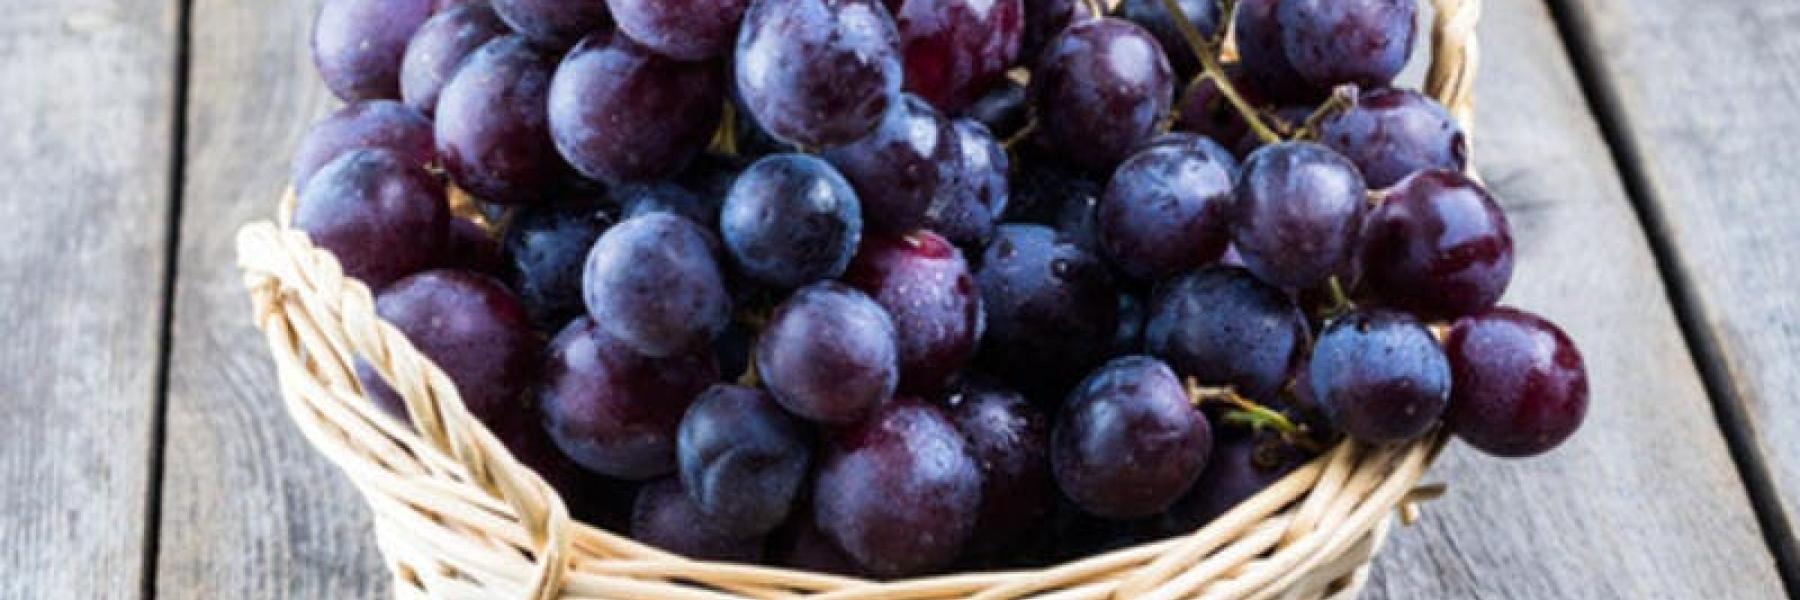 10 فوائد مذهلة للعنب الأسود عليك معرفتها